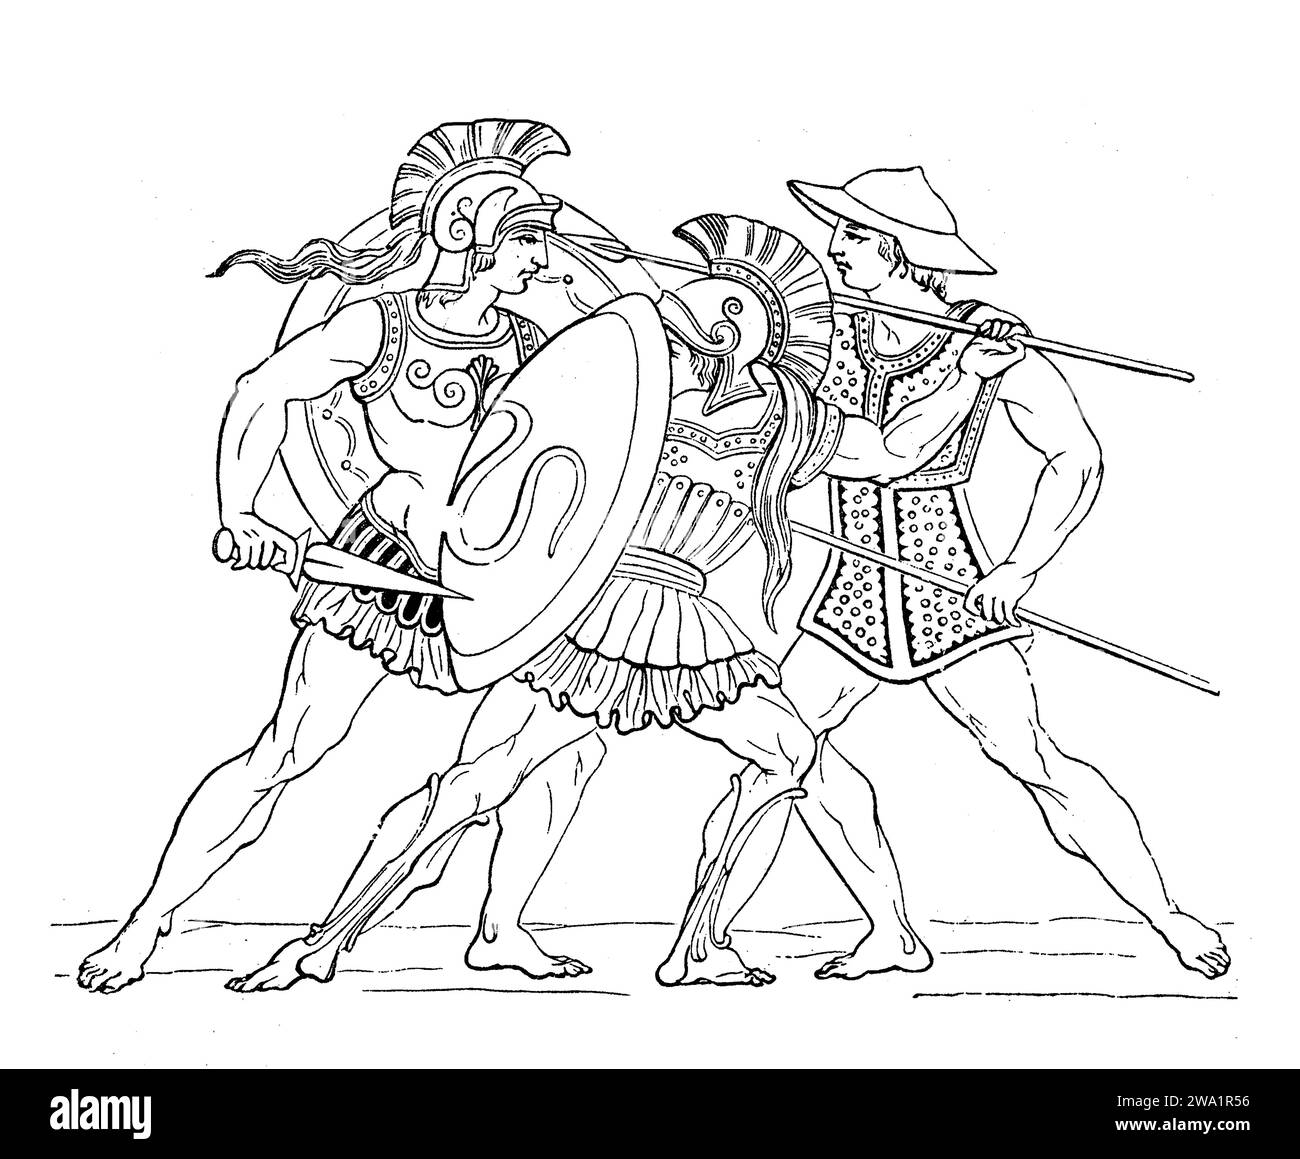 Guerriers grecs anciens combattant, représentation de gravure du 19e siècle Banque D'Images